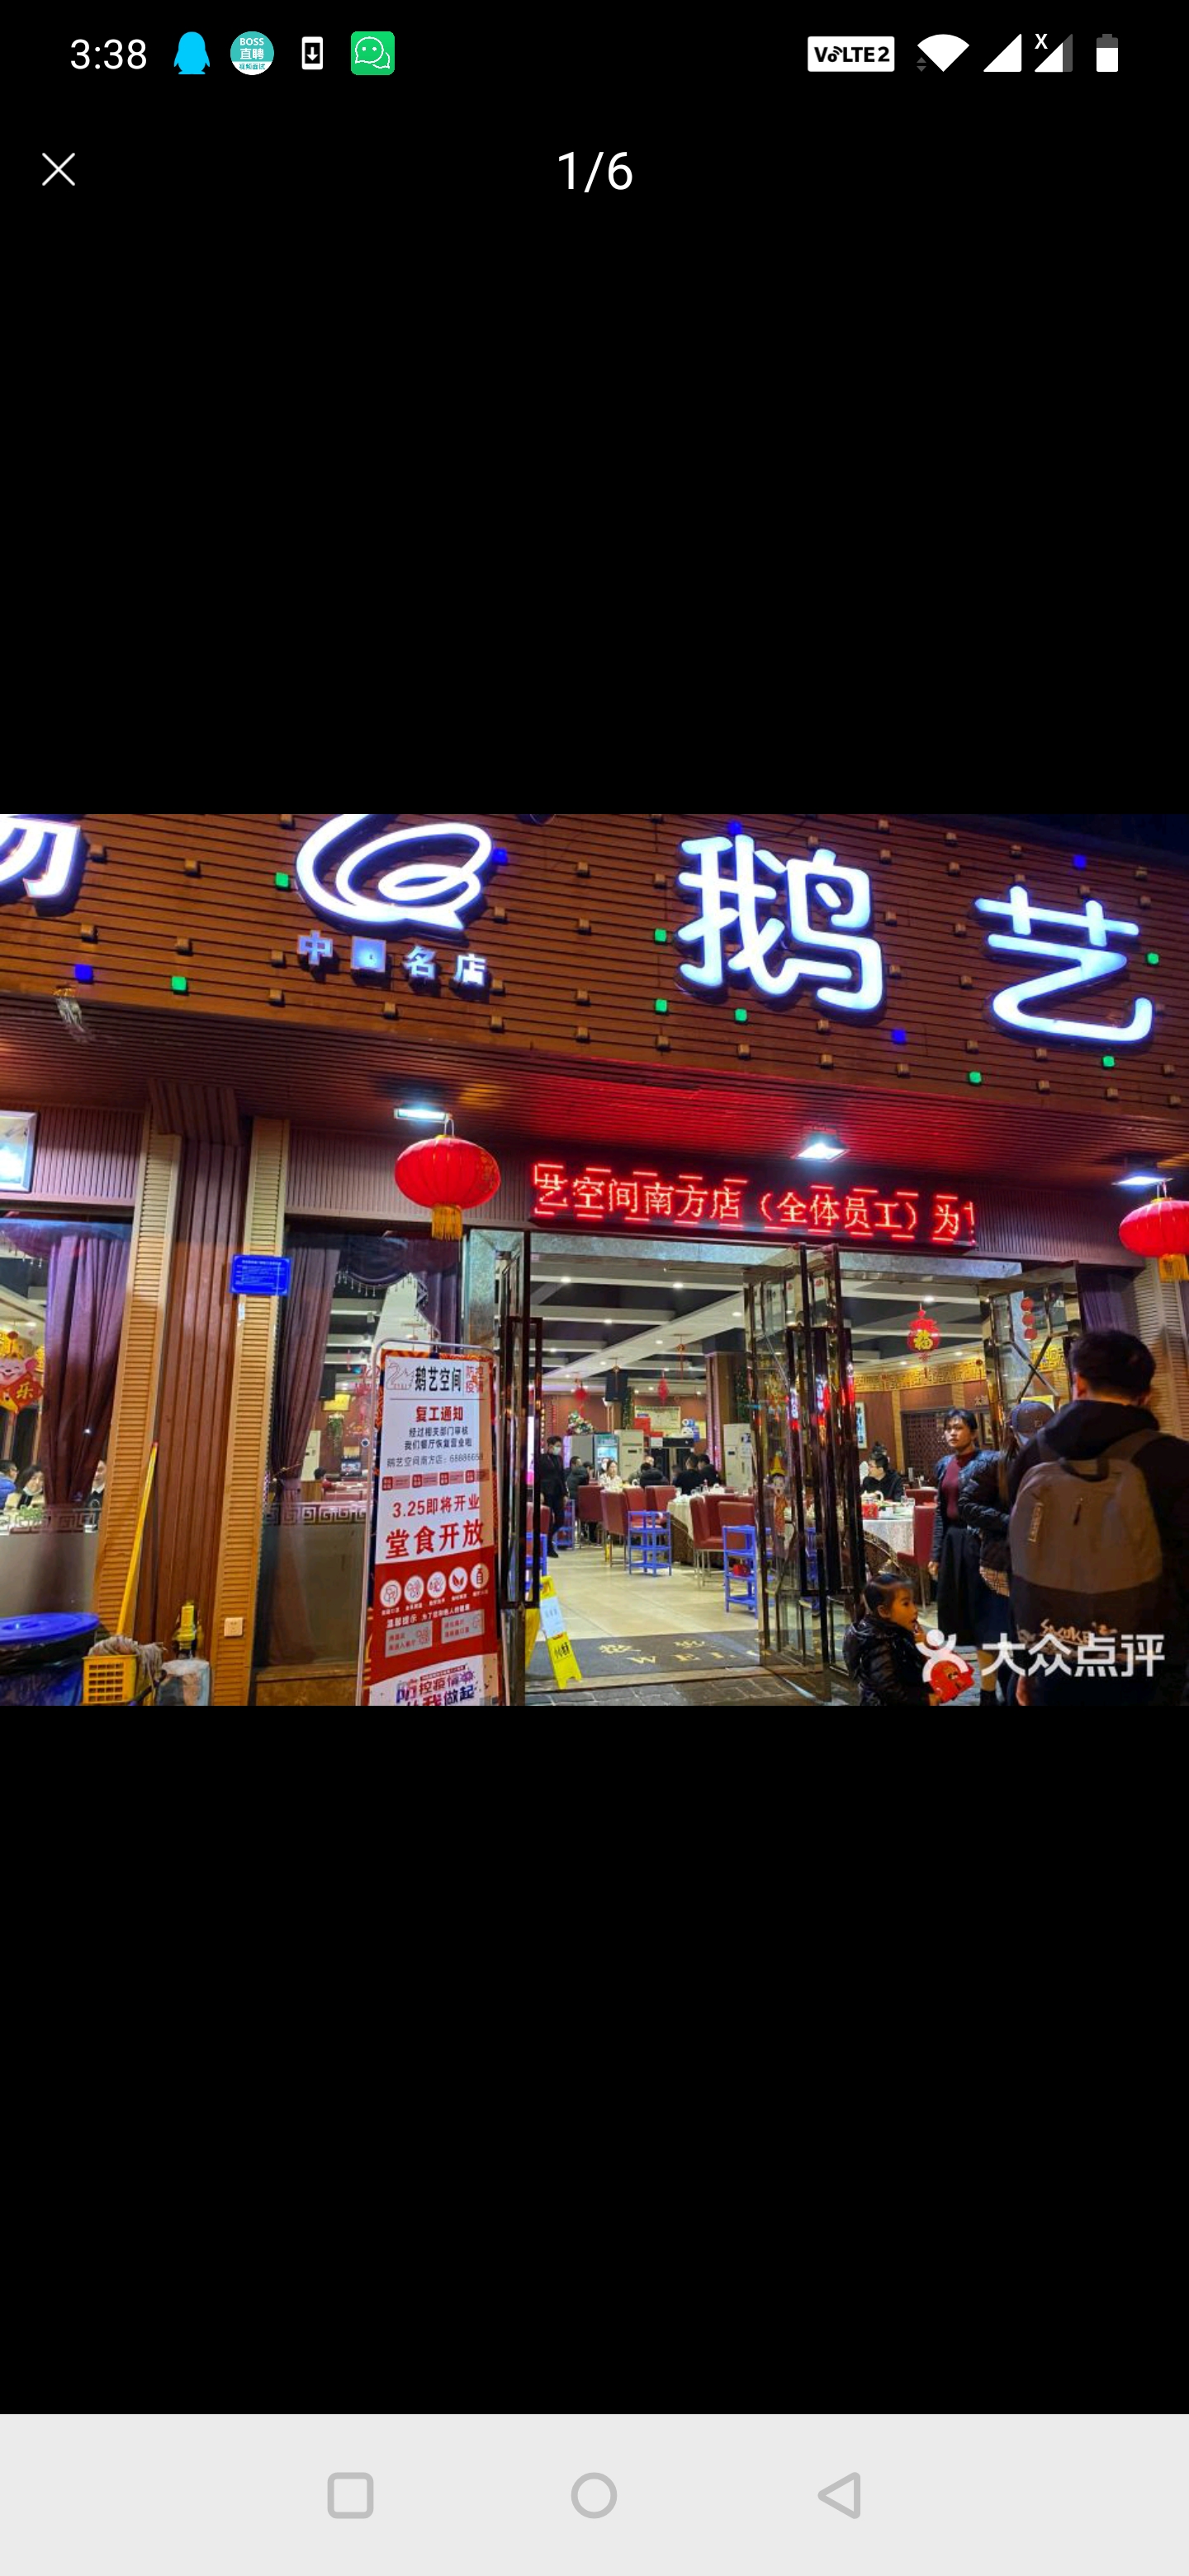 重庆指南针餐饮管理有限公司 环境照片活动图片